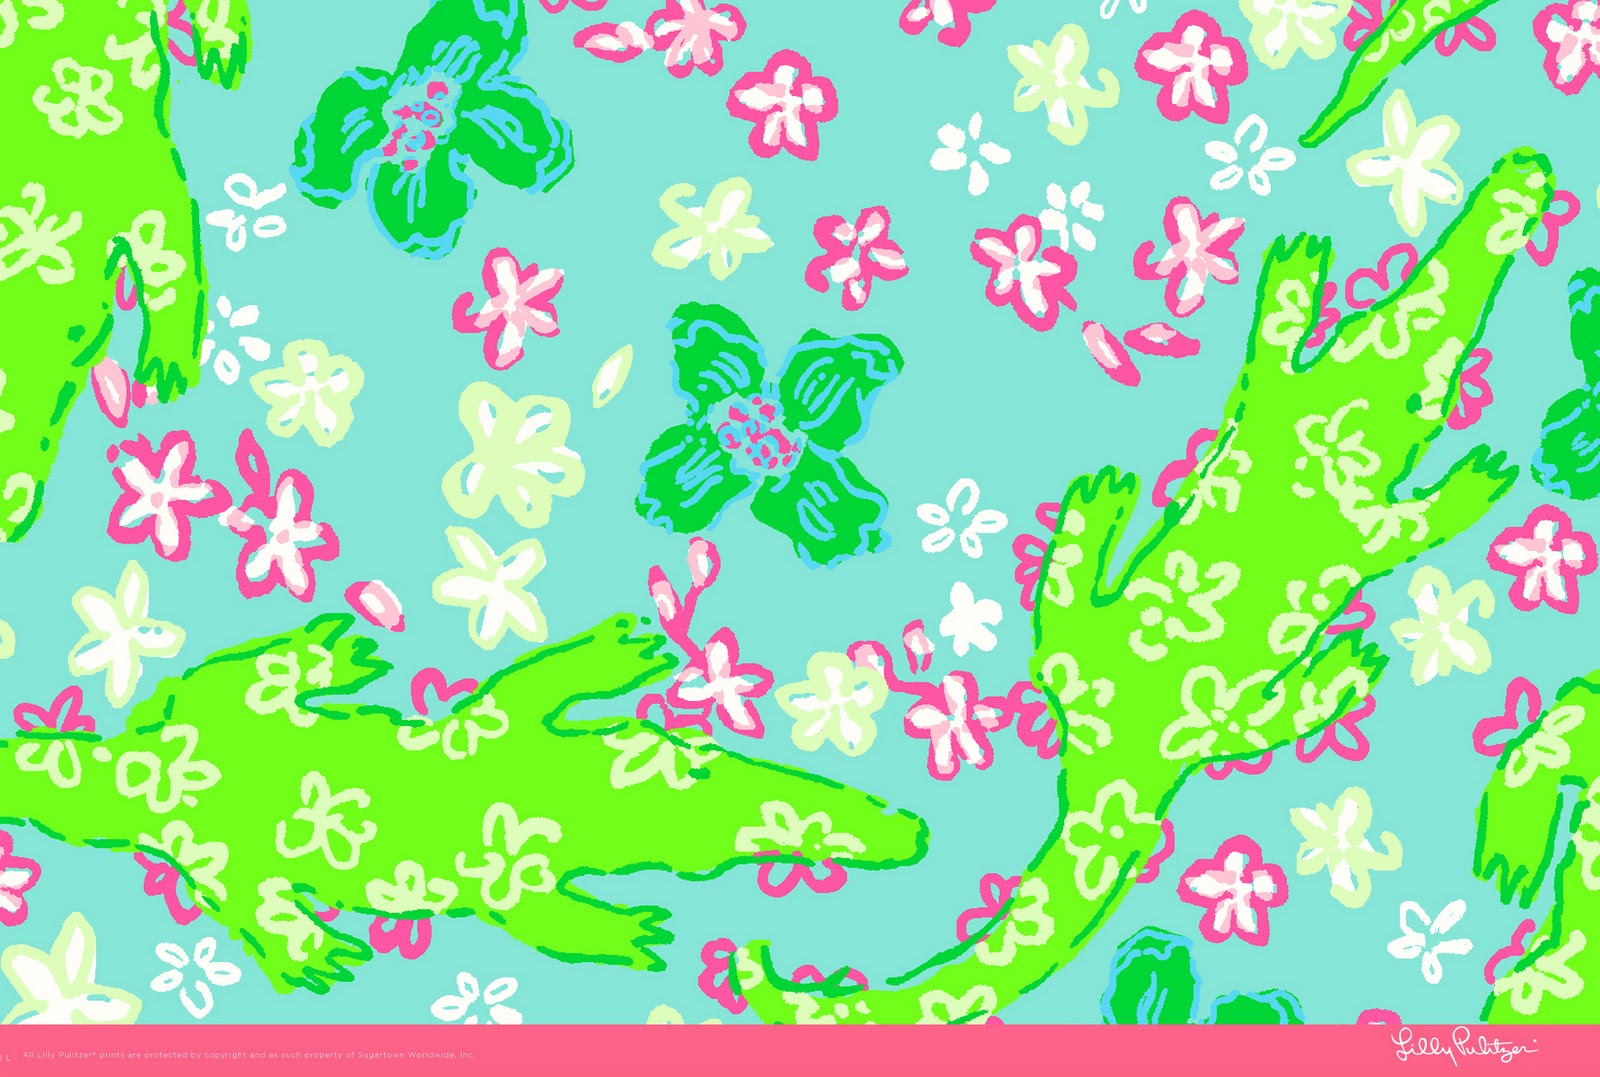 sfondo del desktop lilly pulitzer,verde,modello,carta per incartare